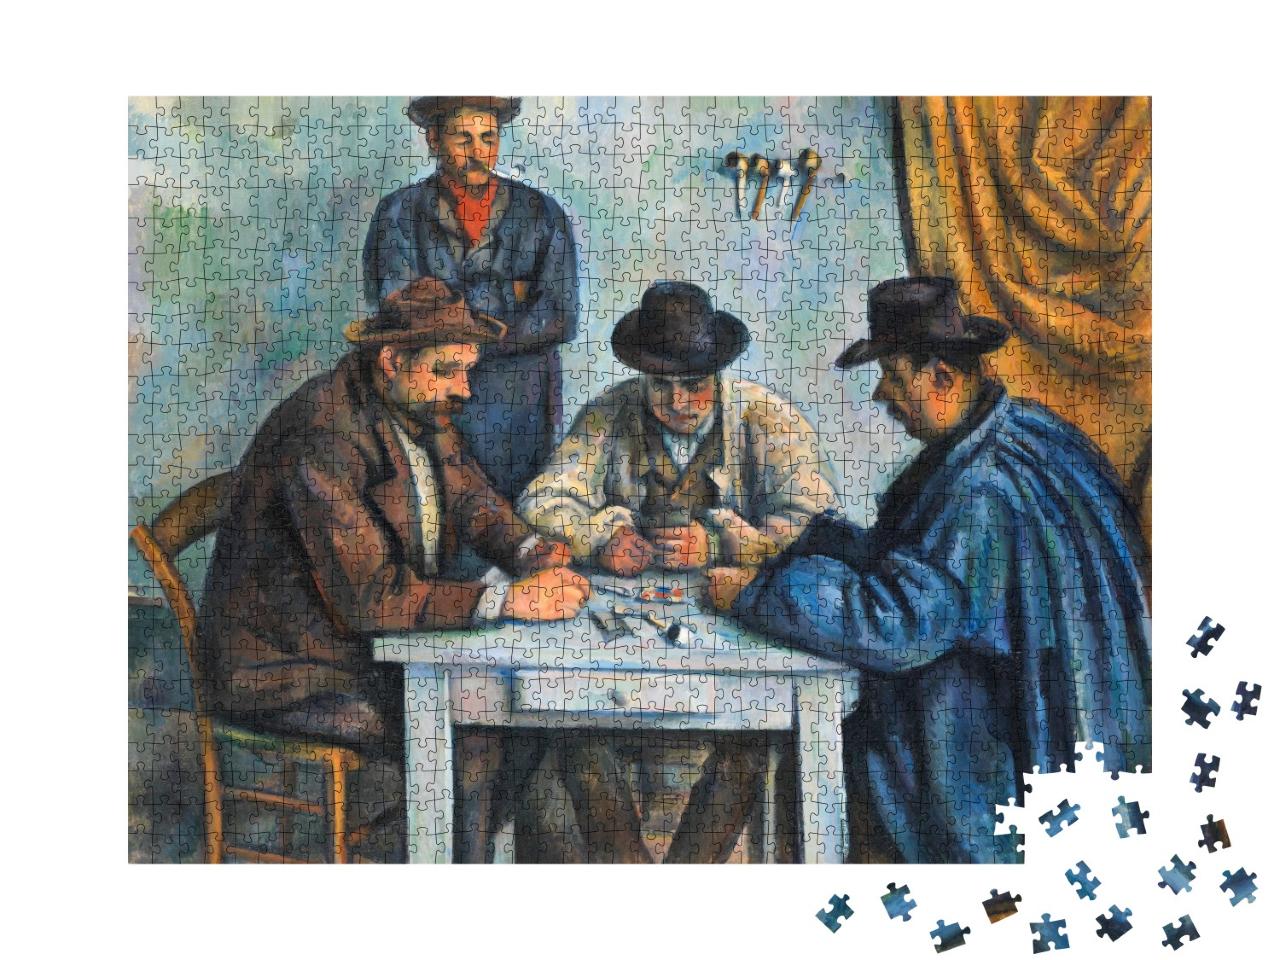 Puzzle de 1000 pièces « Paul Cézanne - Les joueurs de cartes »